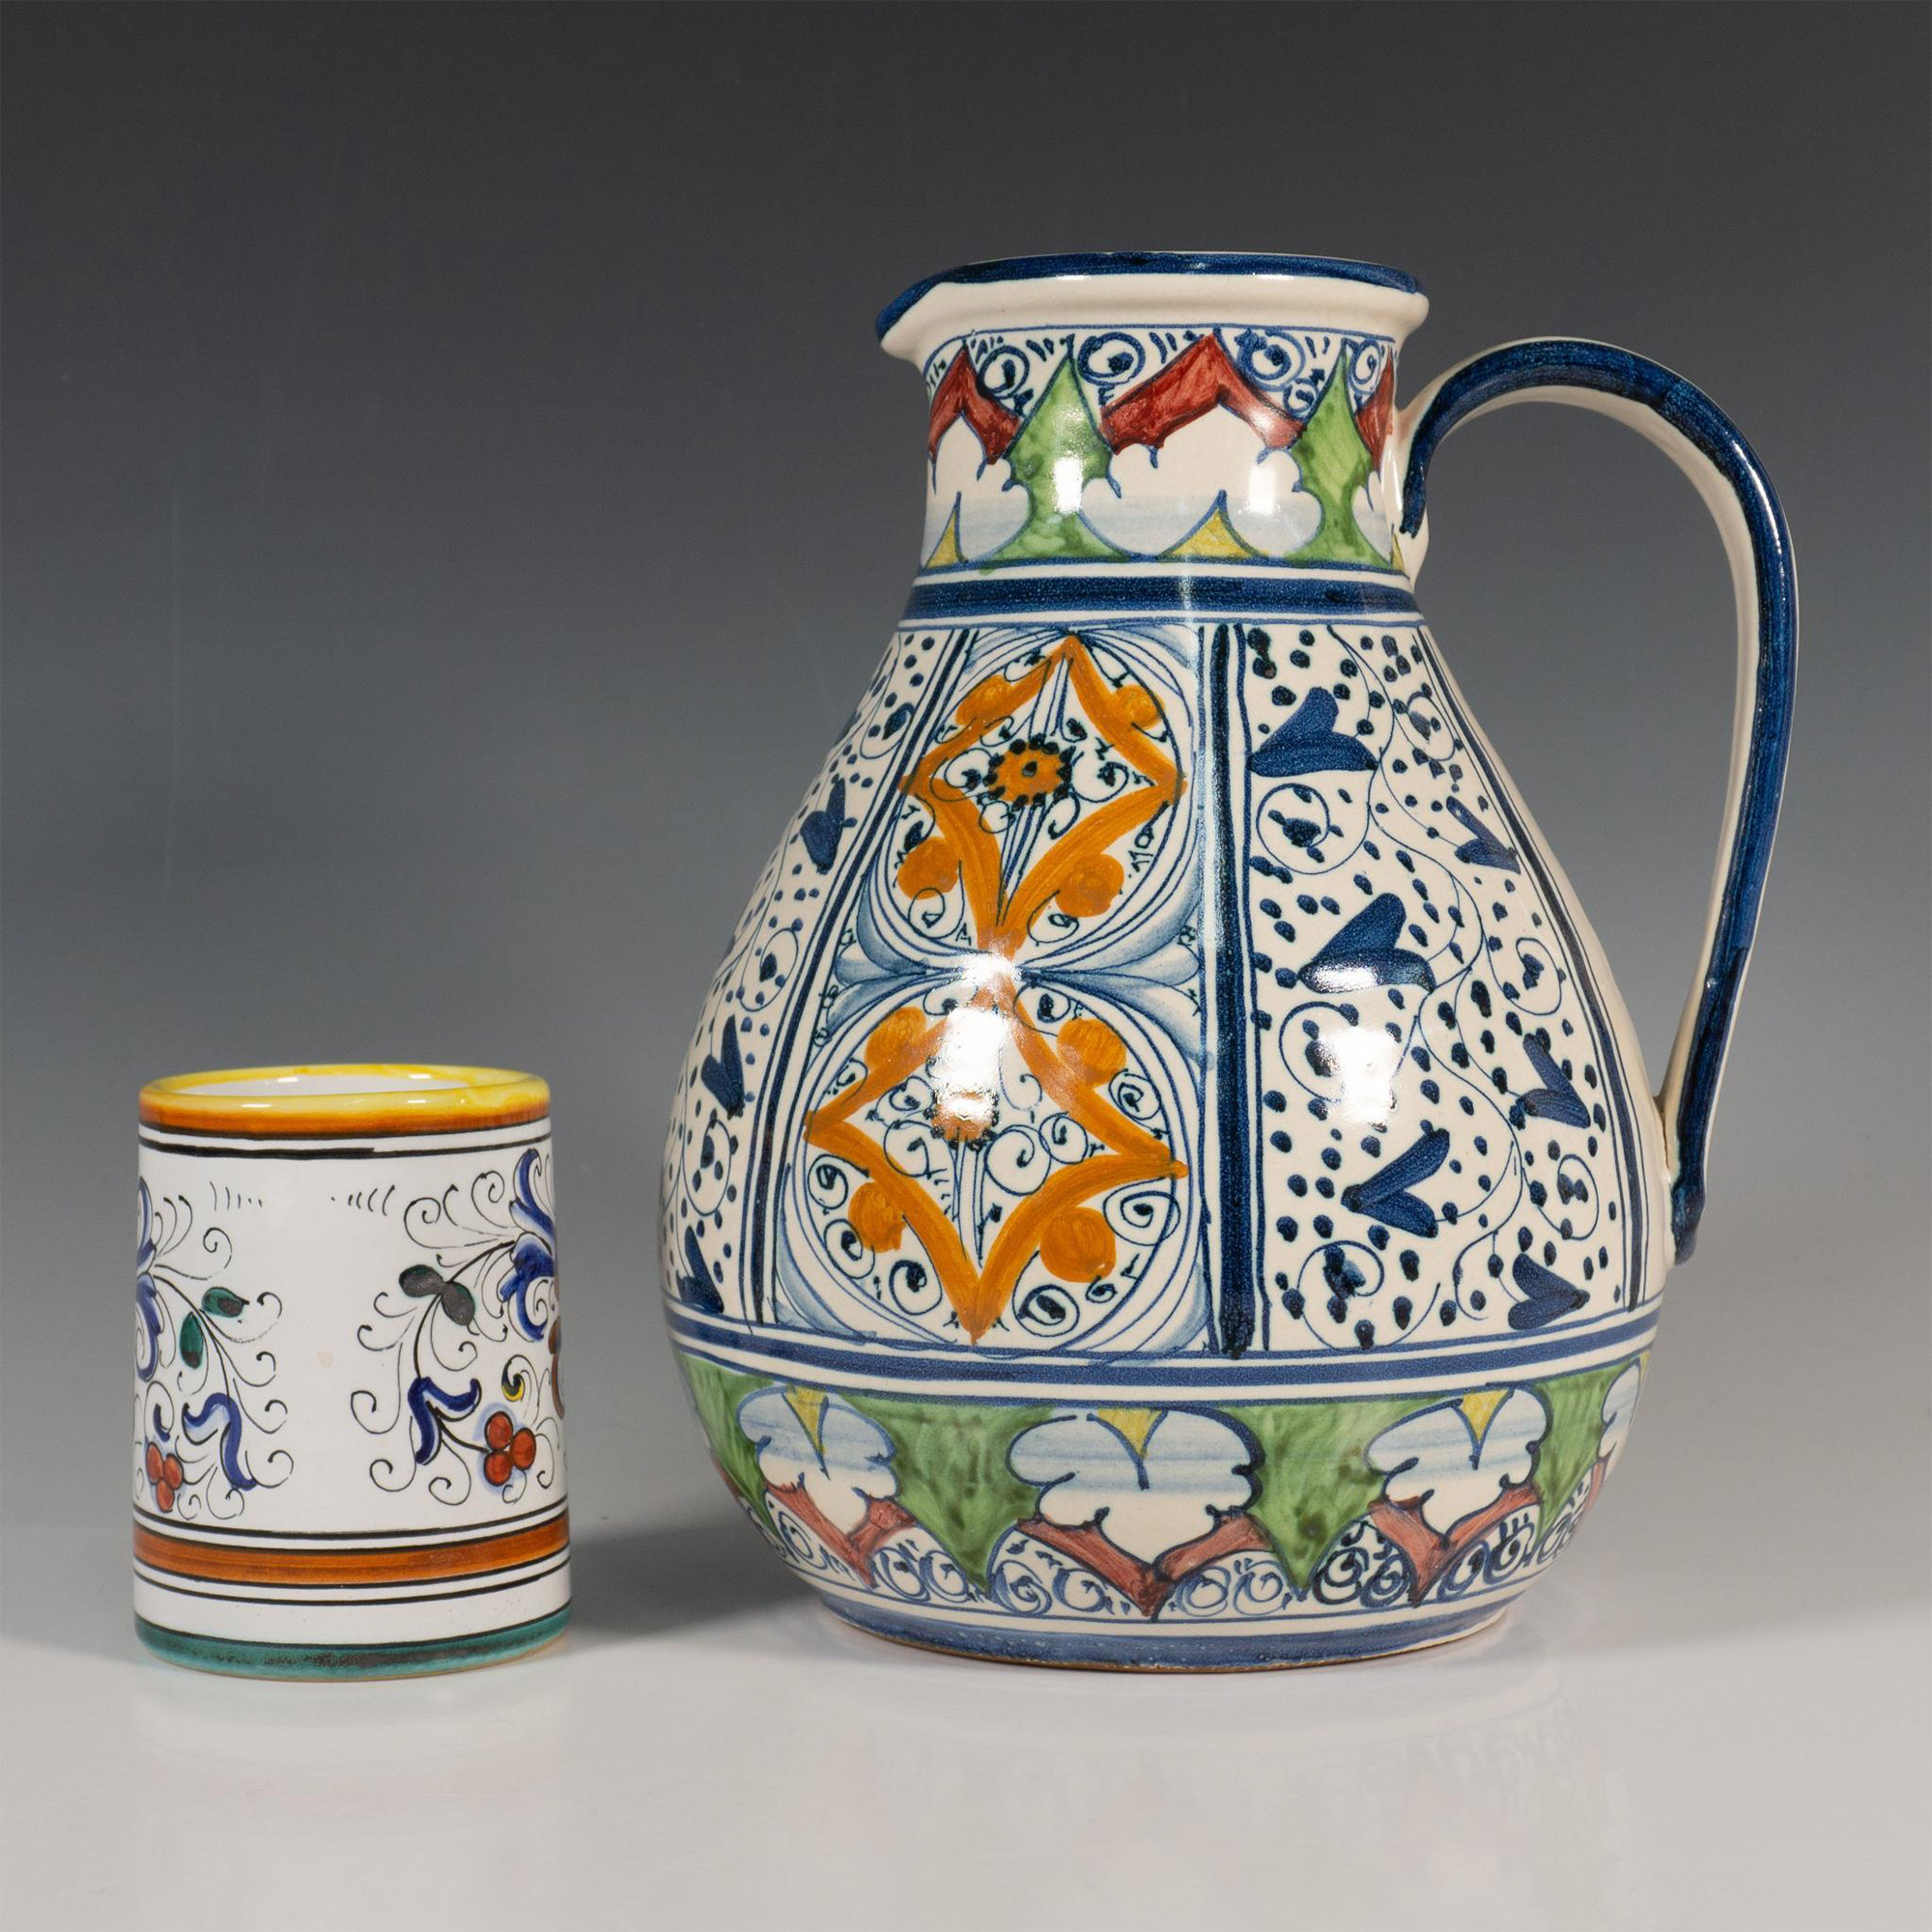 Original Hand-Painted Ceramic Carafe & S. Gimignano Tumbler - Image 2 of 5